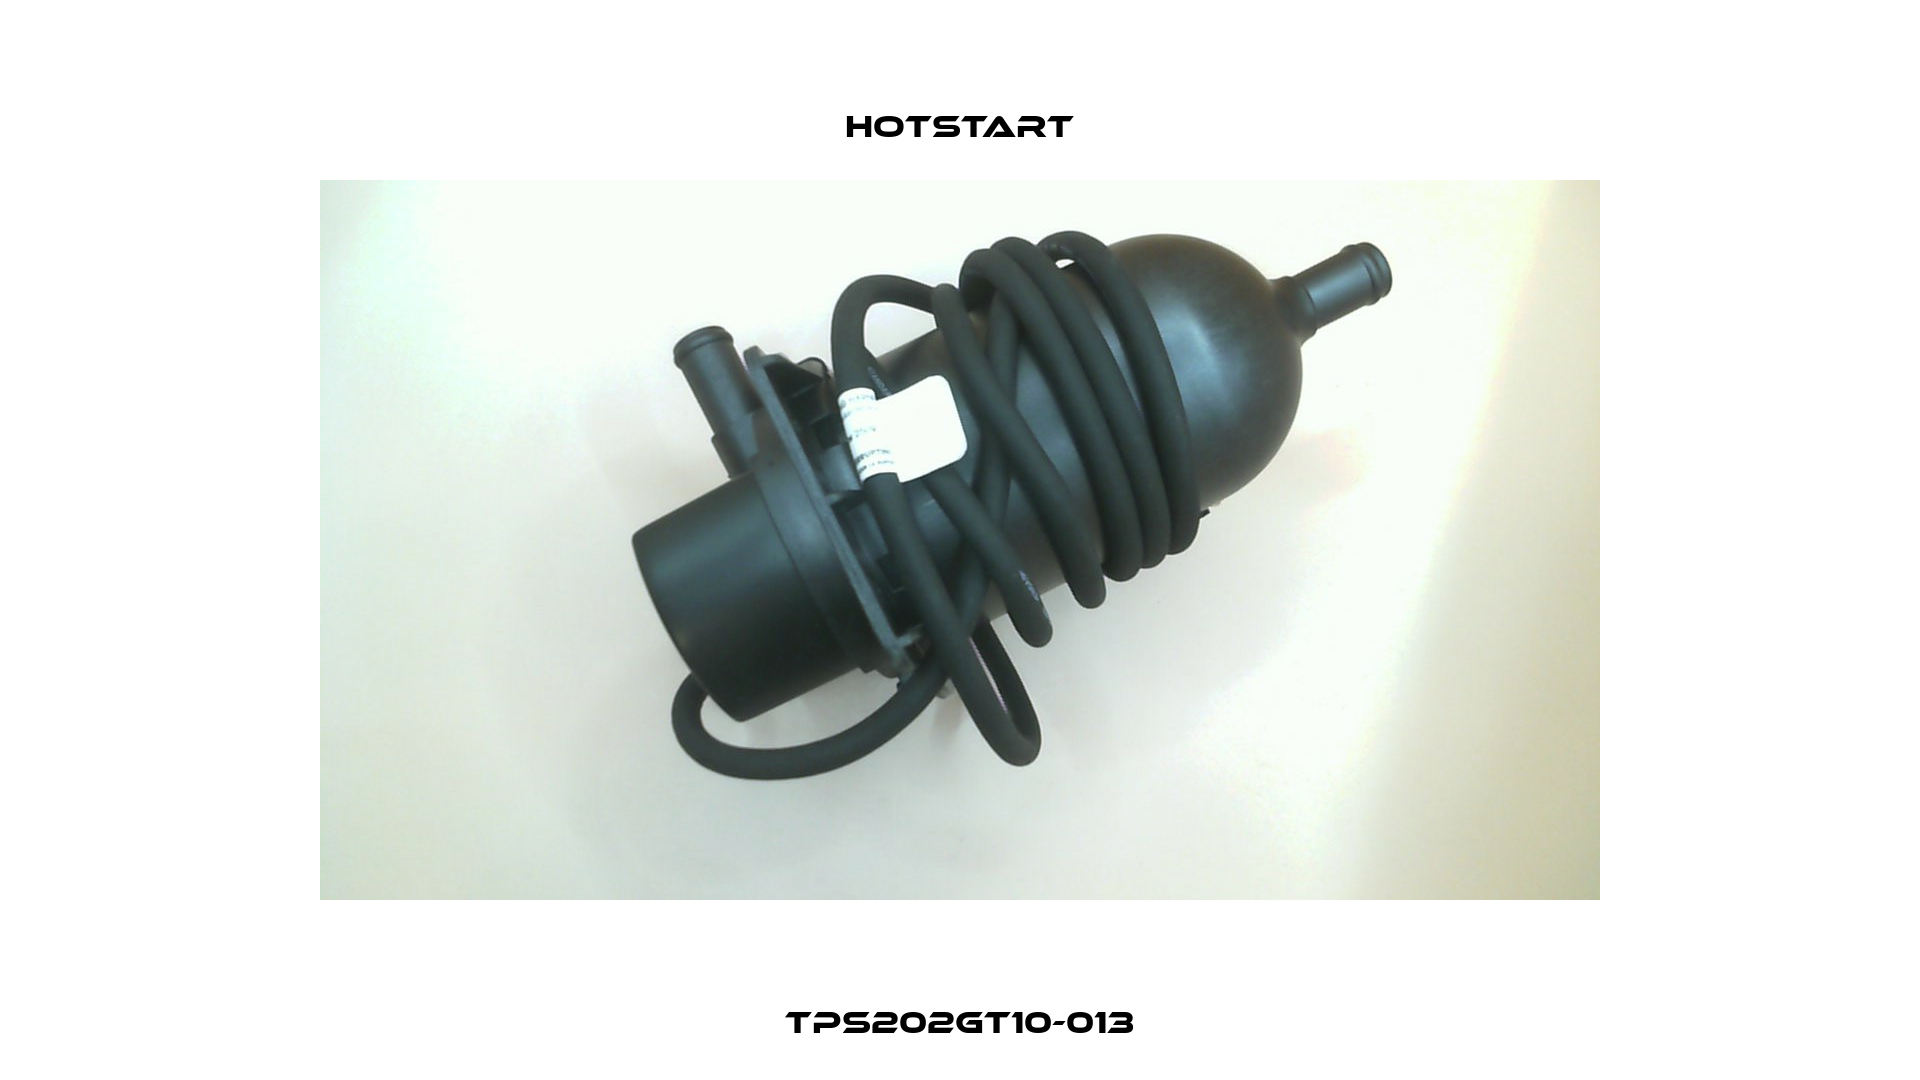 TPS202GT10-013 Hotstart